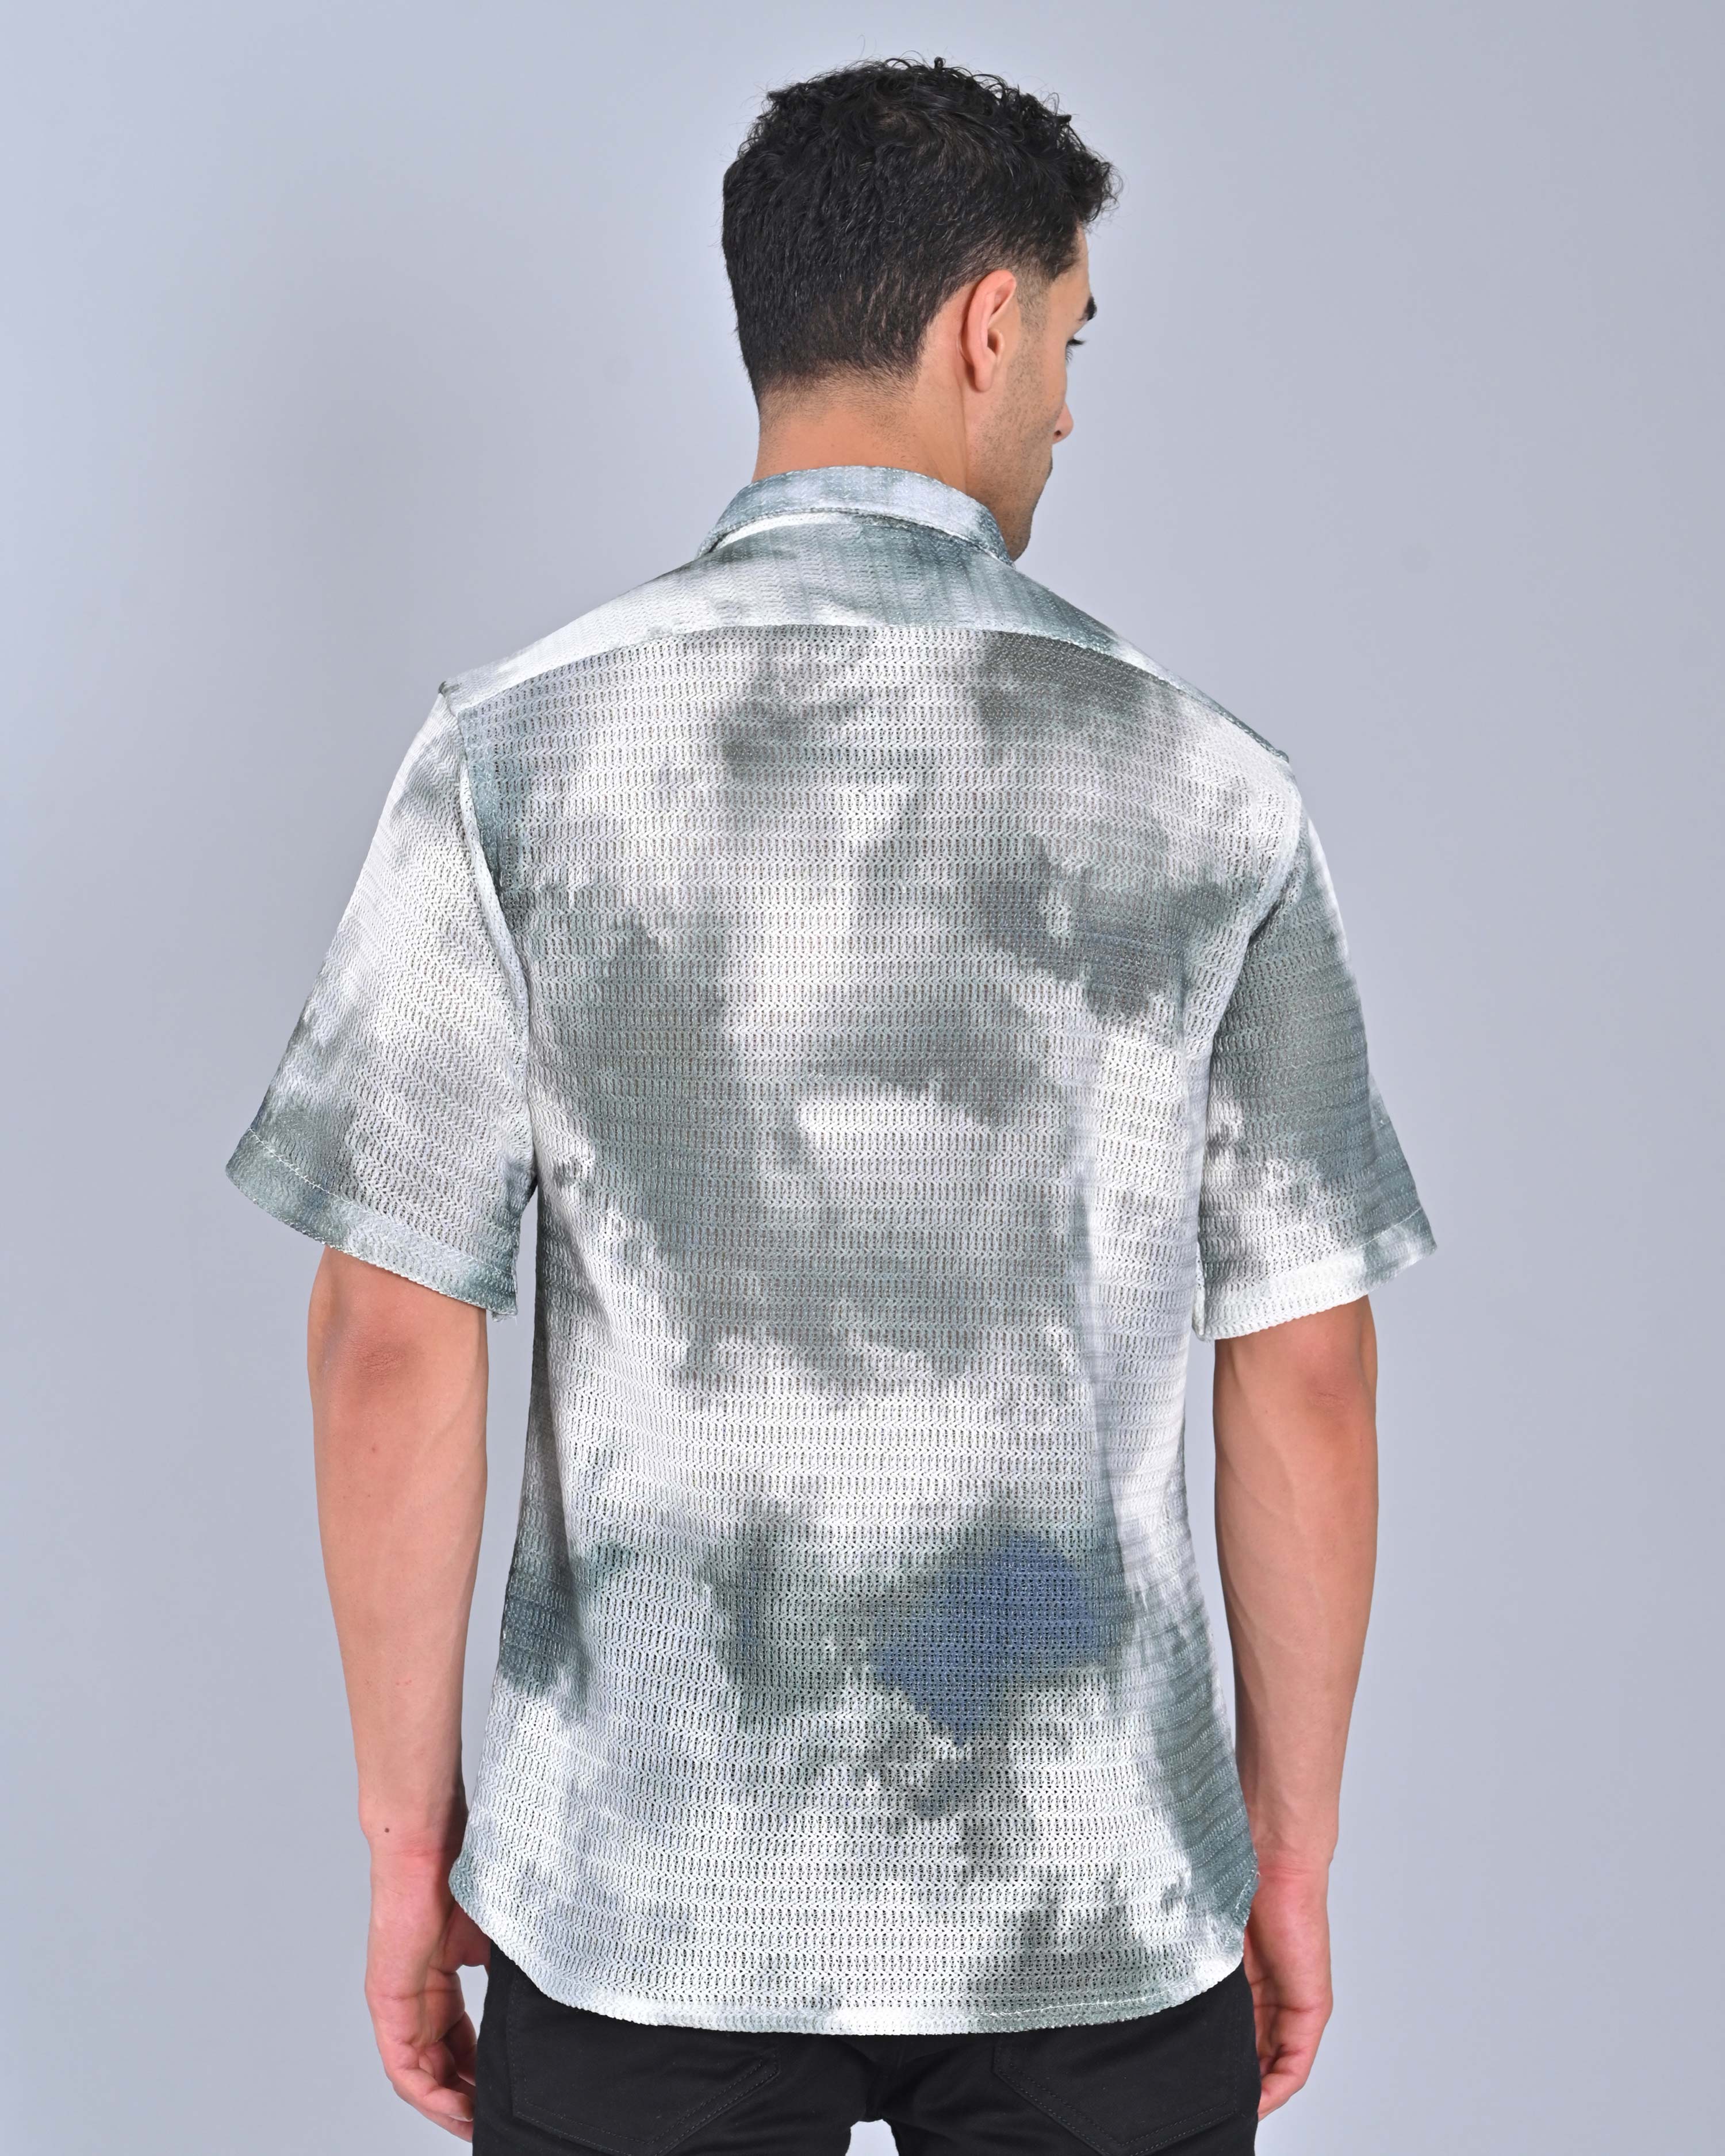 Men's Grey Spread Collar Tweed Shirt Online